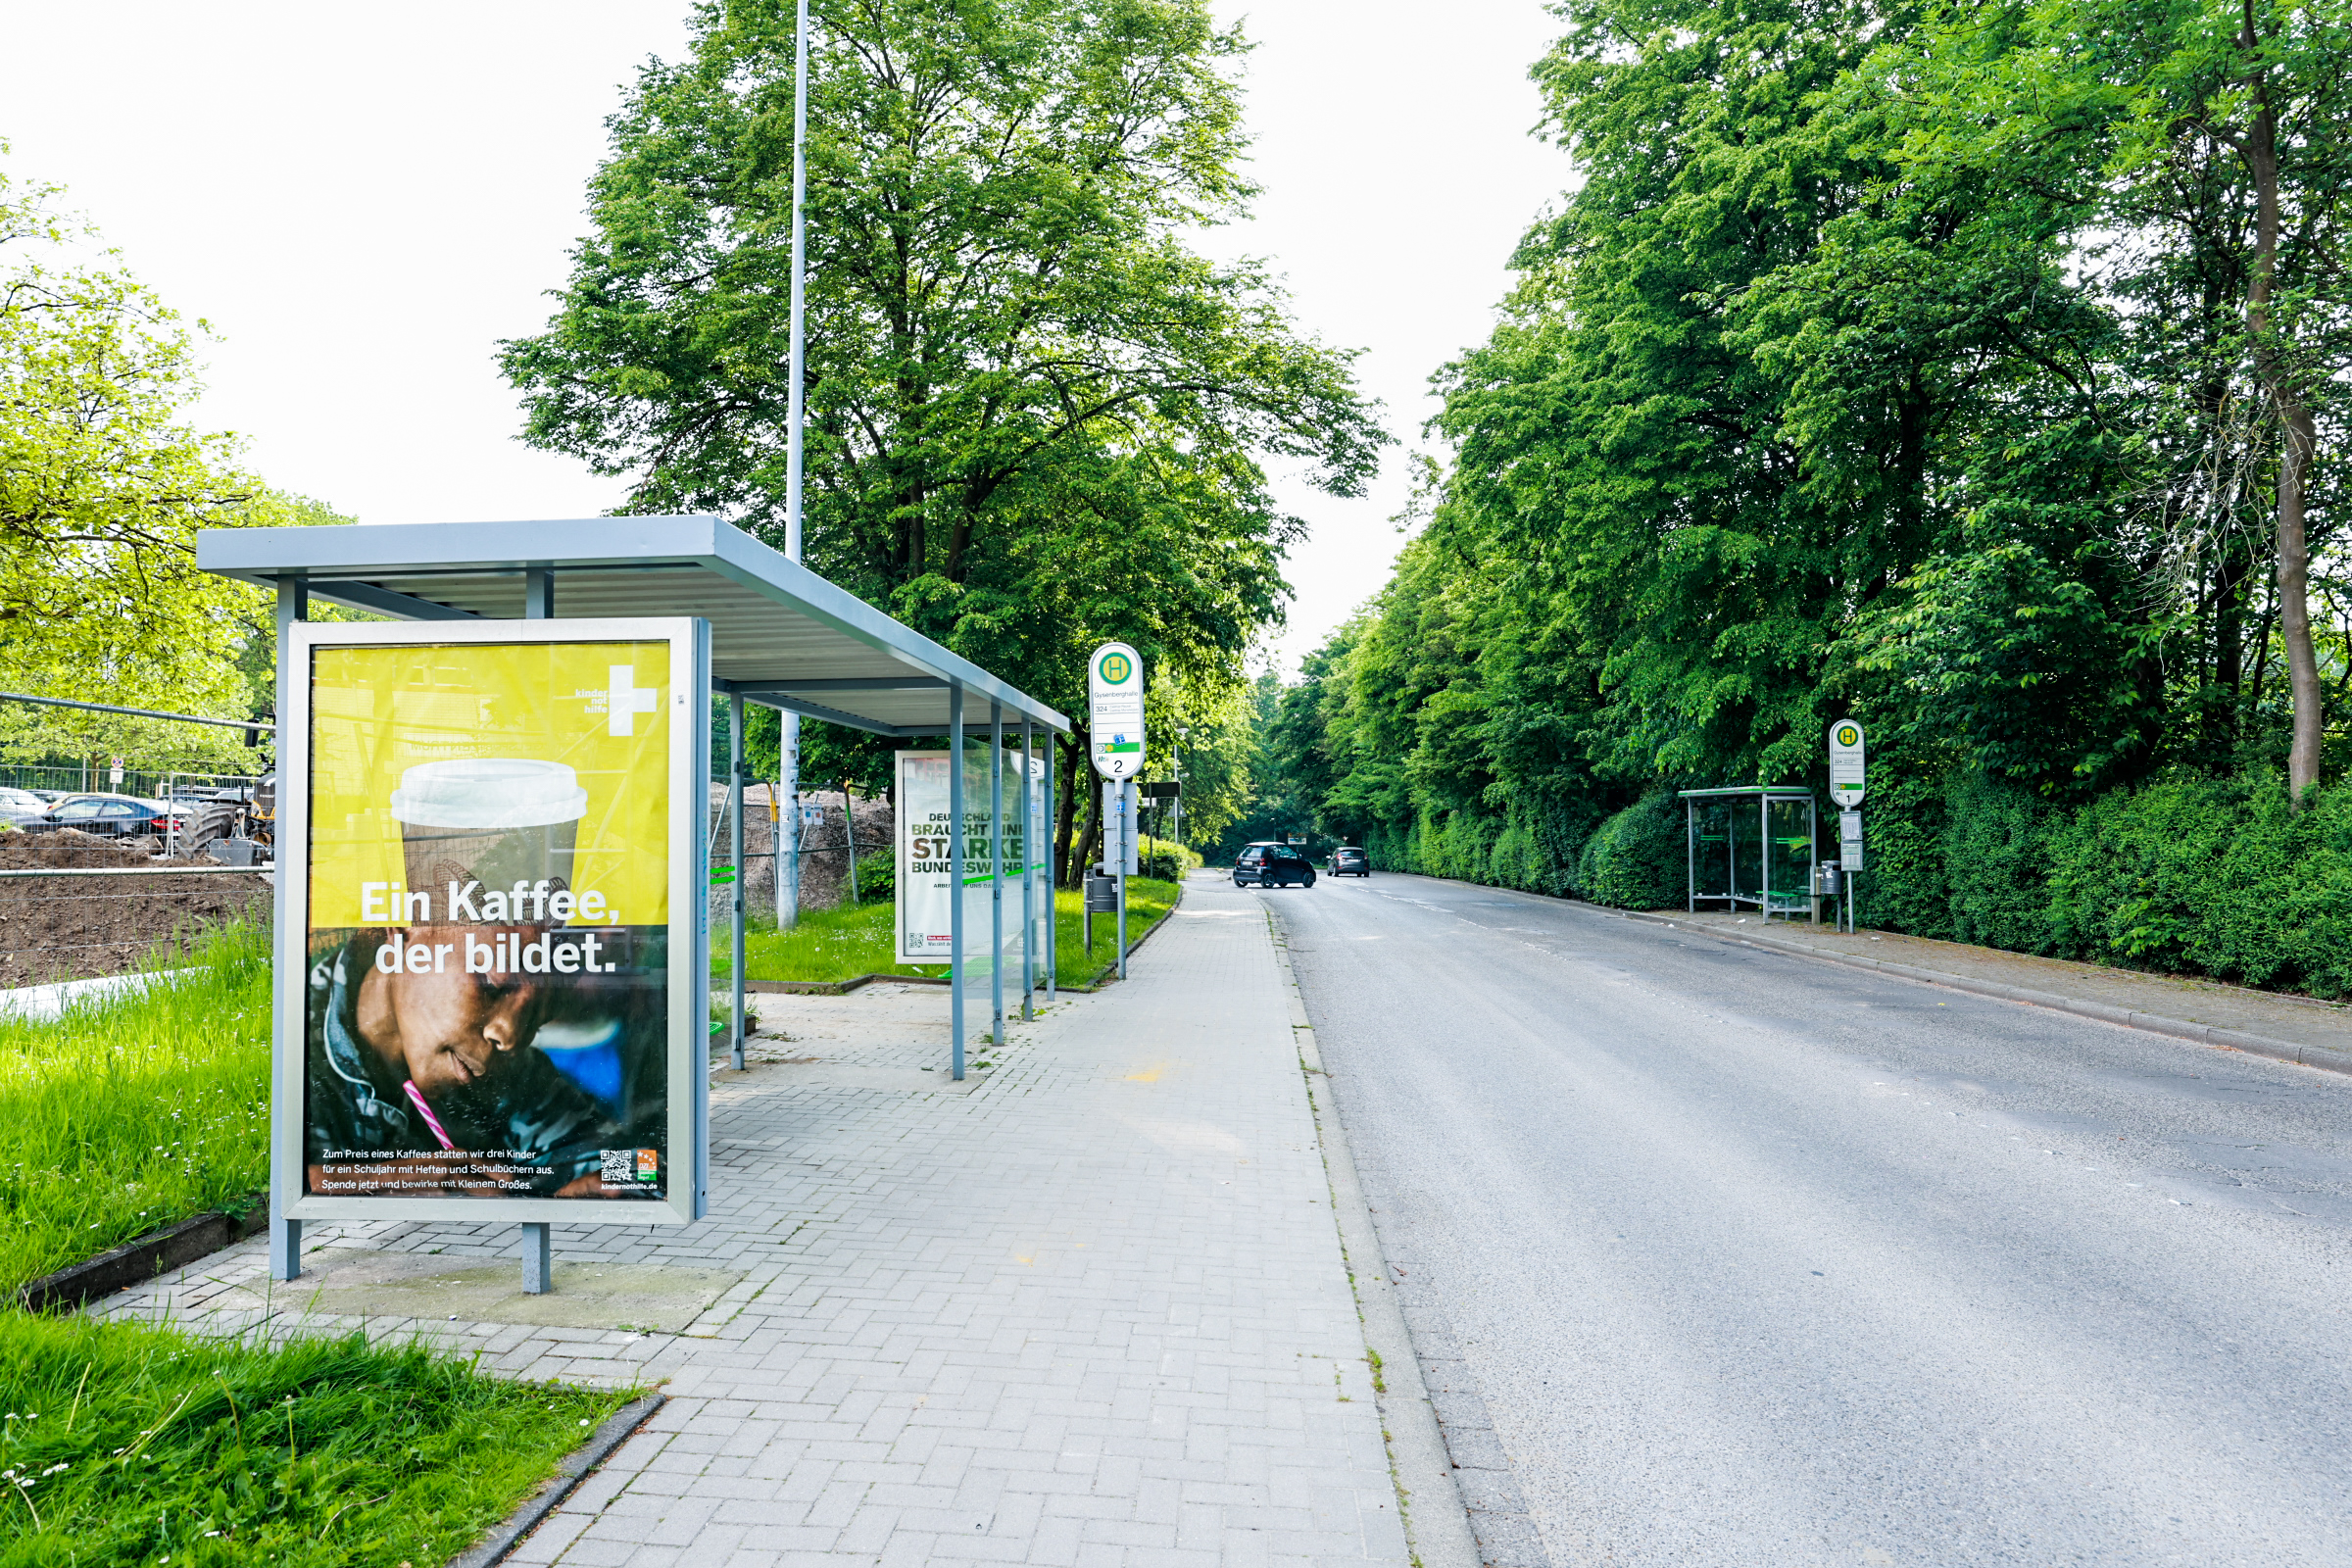  ÖPNV-Bushaltestelle „Gysenbergpark Lago“ der Linie 324 mit taktilen Bodenelementen und Sitzgelegenheiten